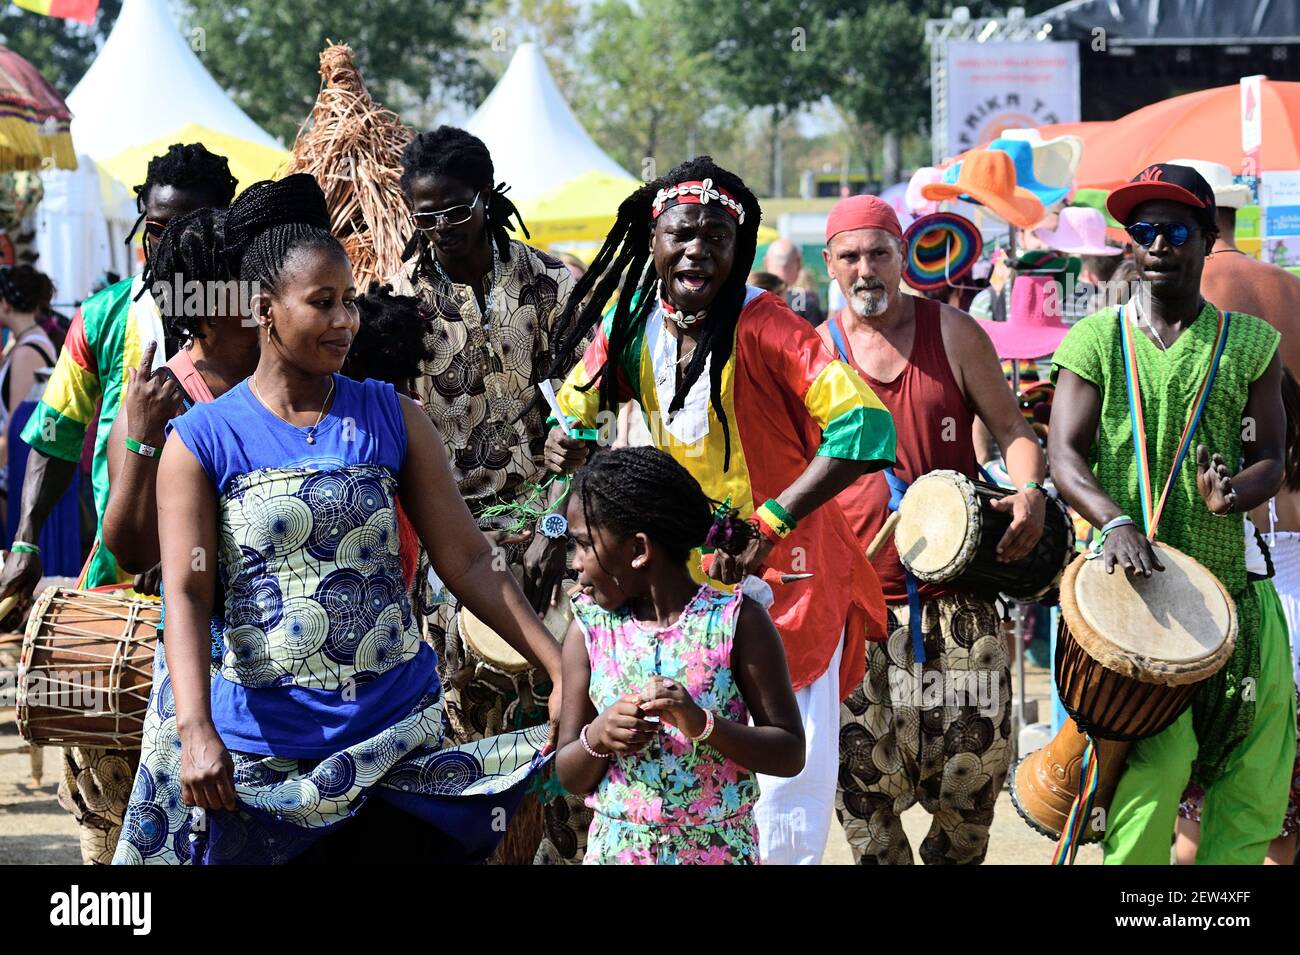 Vienna, Austria. 16 agosto 2015. Impressioni dalla stagione del festival 2015 sull'isola del Danubio a Vienna. Gruppo africano tradizionale. Foto Stock